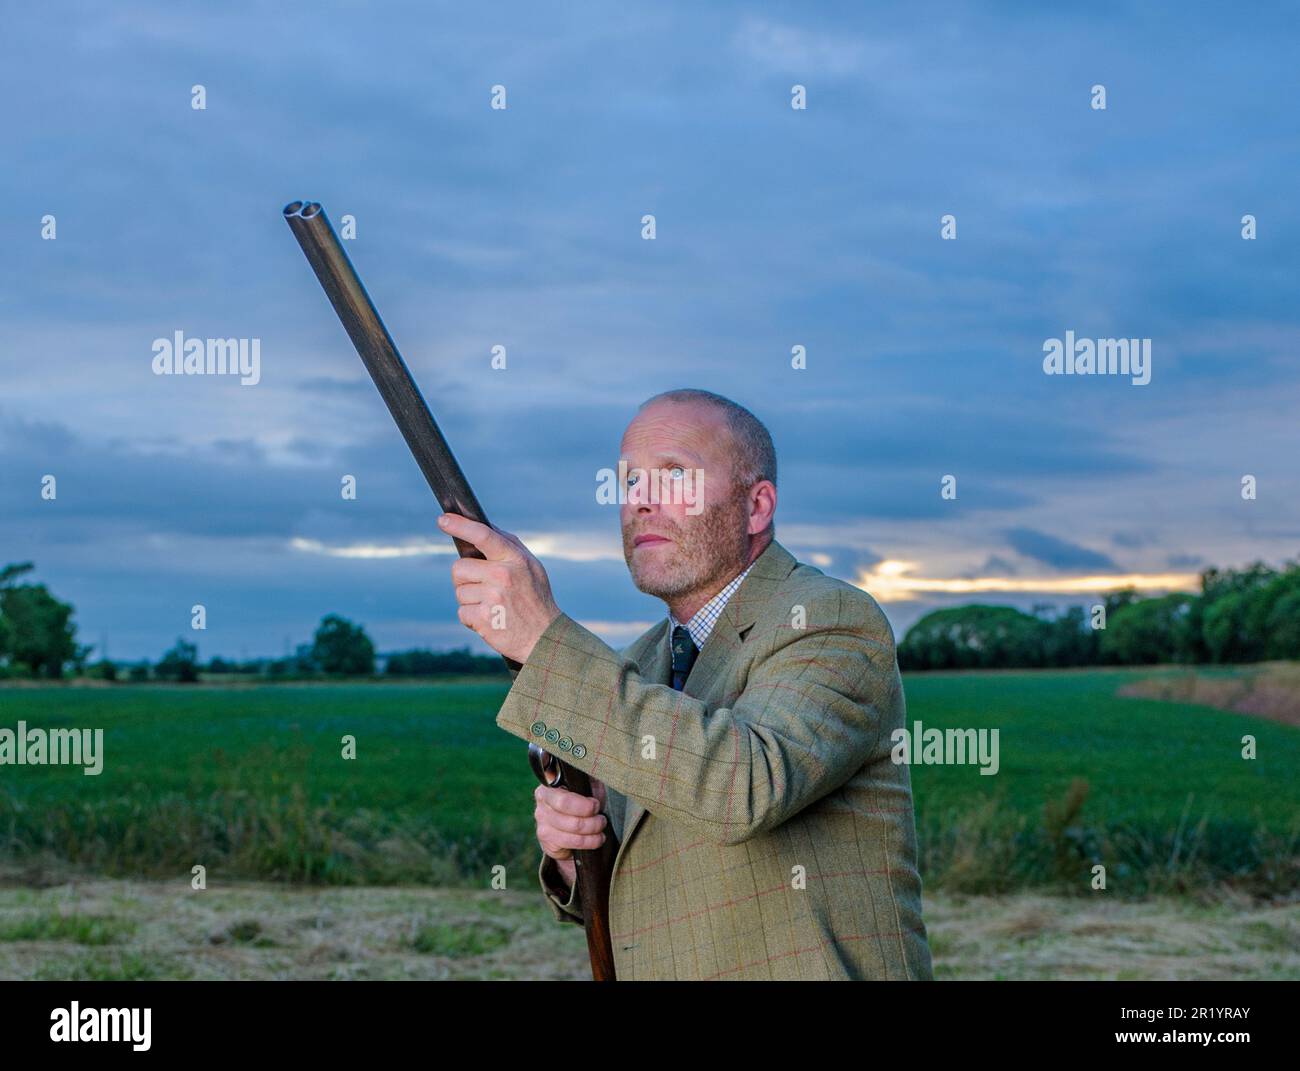 Un homme anglais se tenait au crépuscule dans un costume de tir en tweed avec un fusil de chasse Banque D'Images